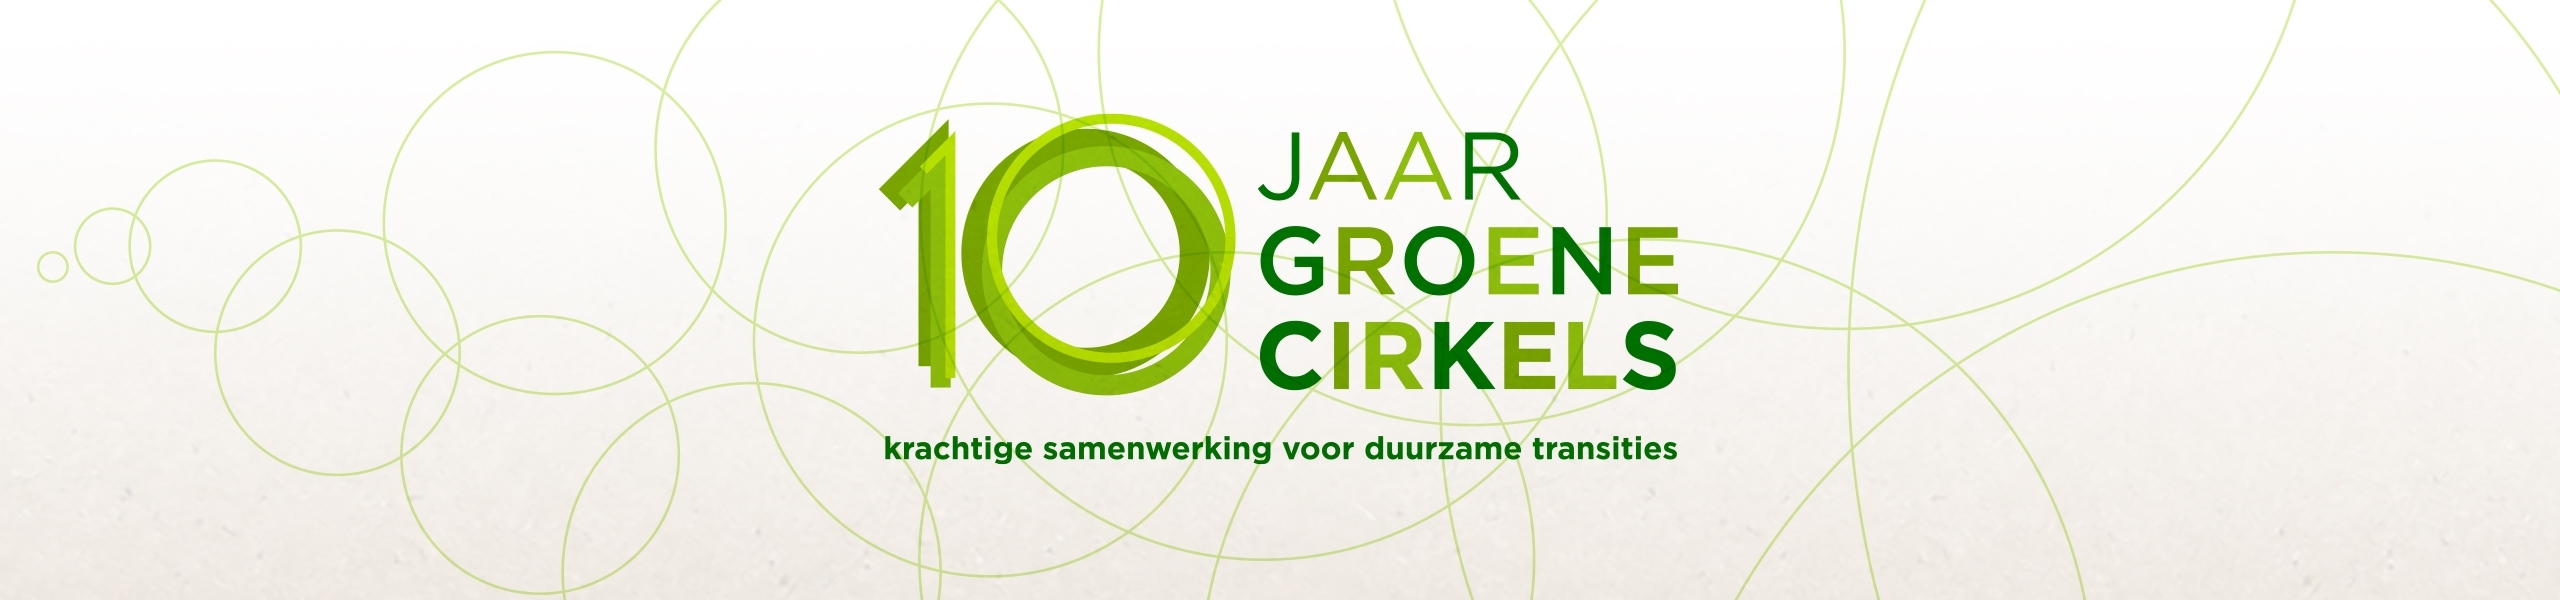 Logo 10 jaar Groene Cirkels